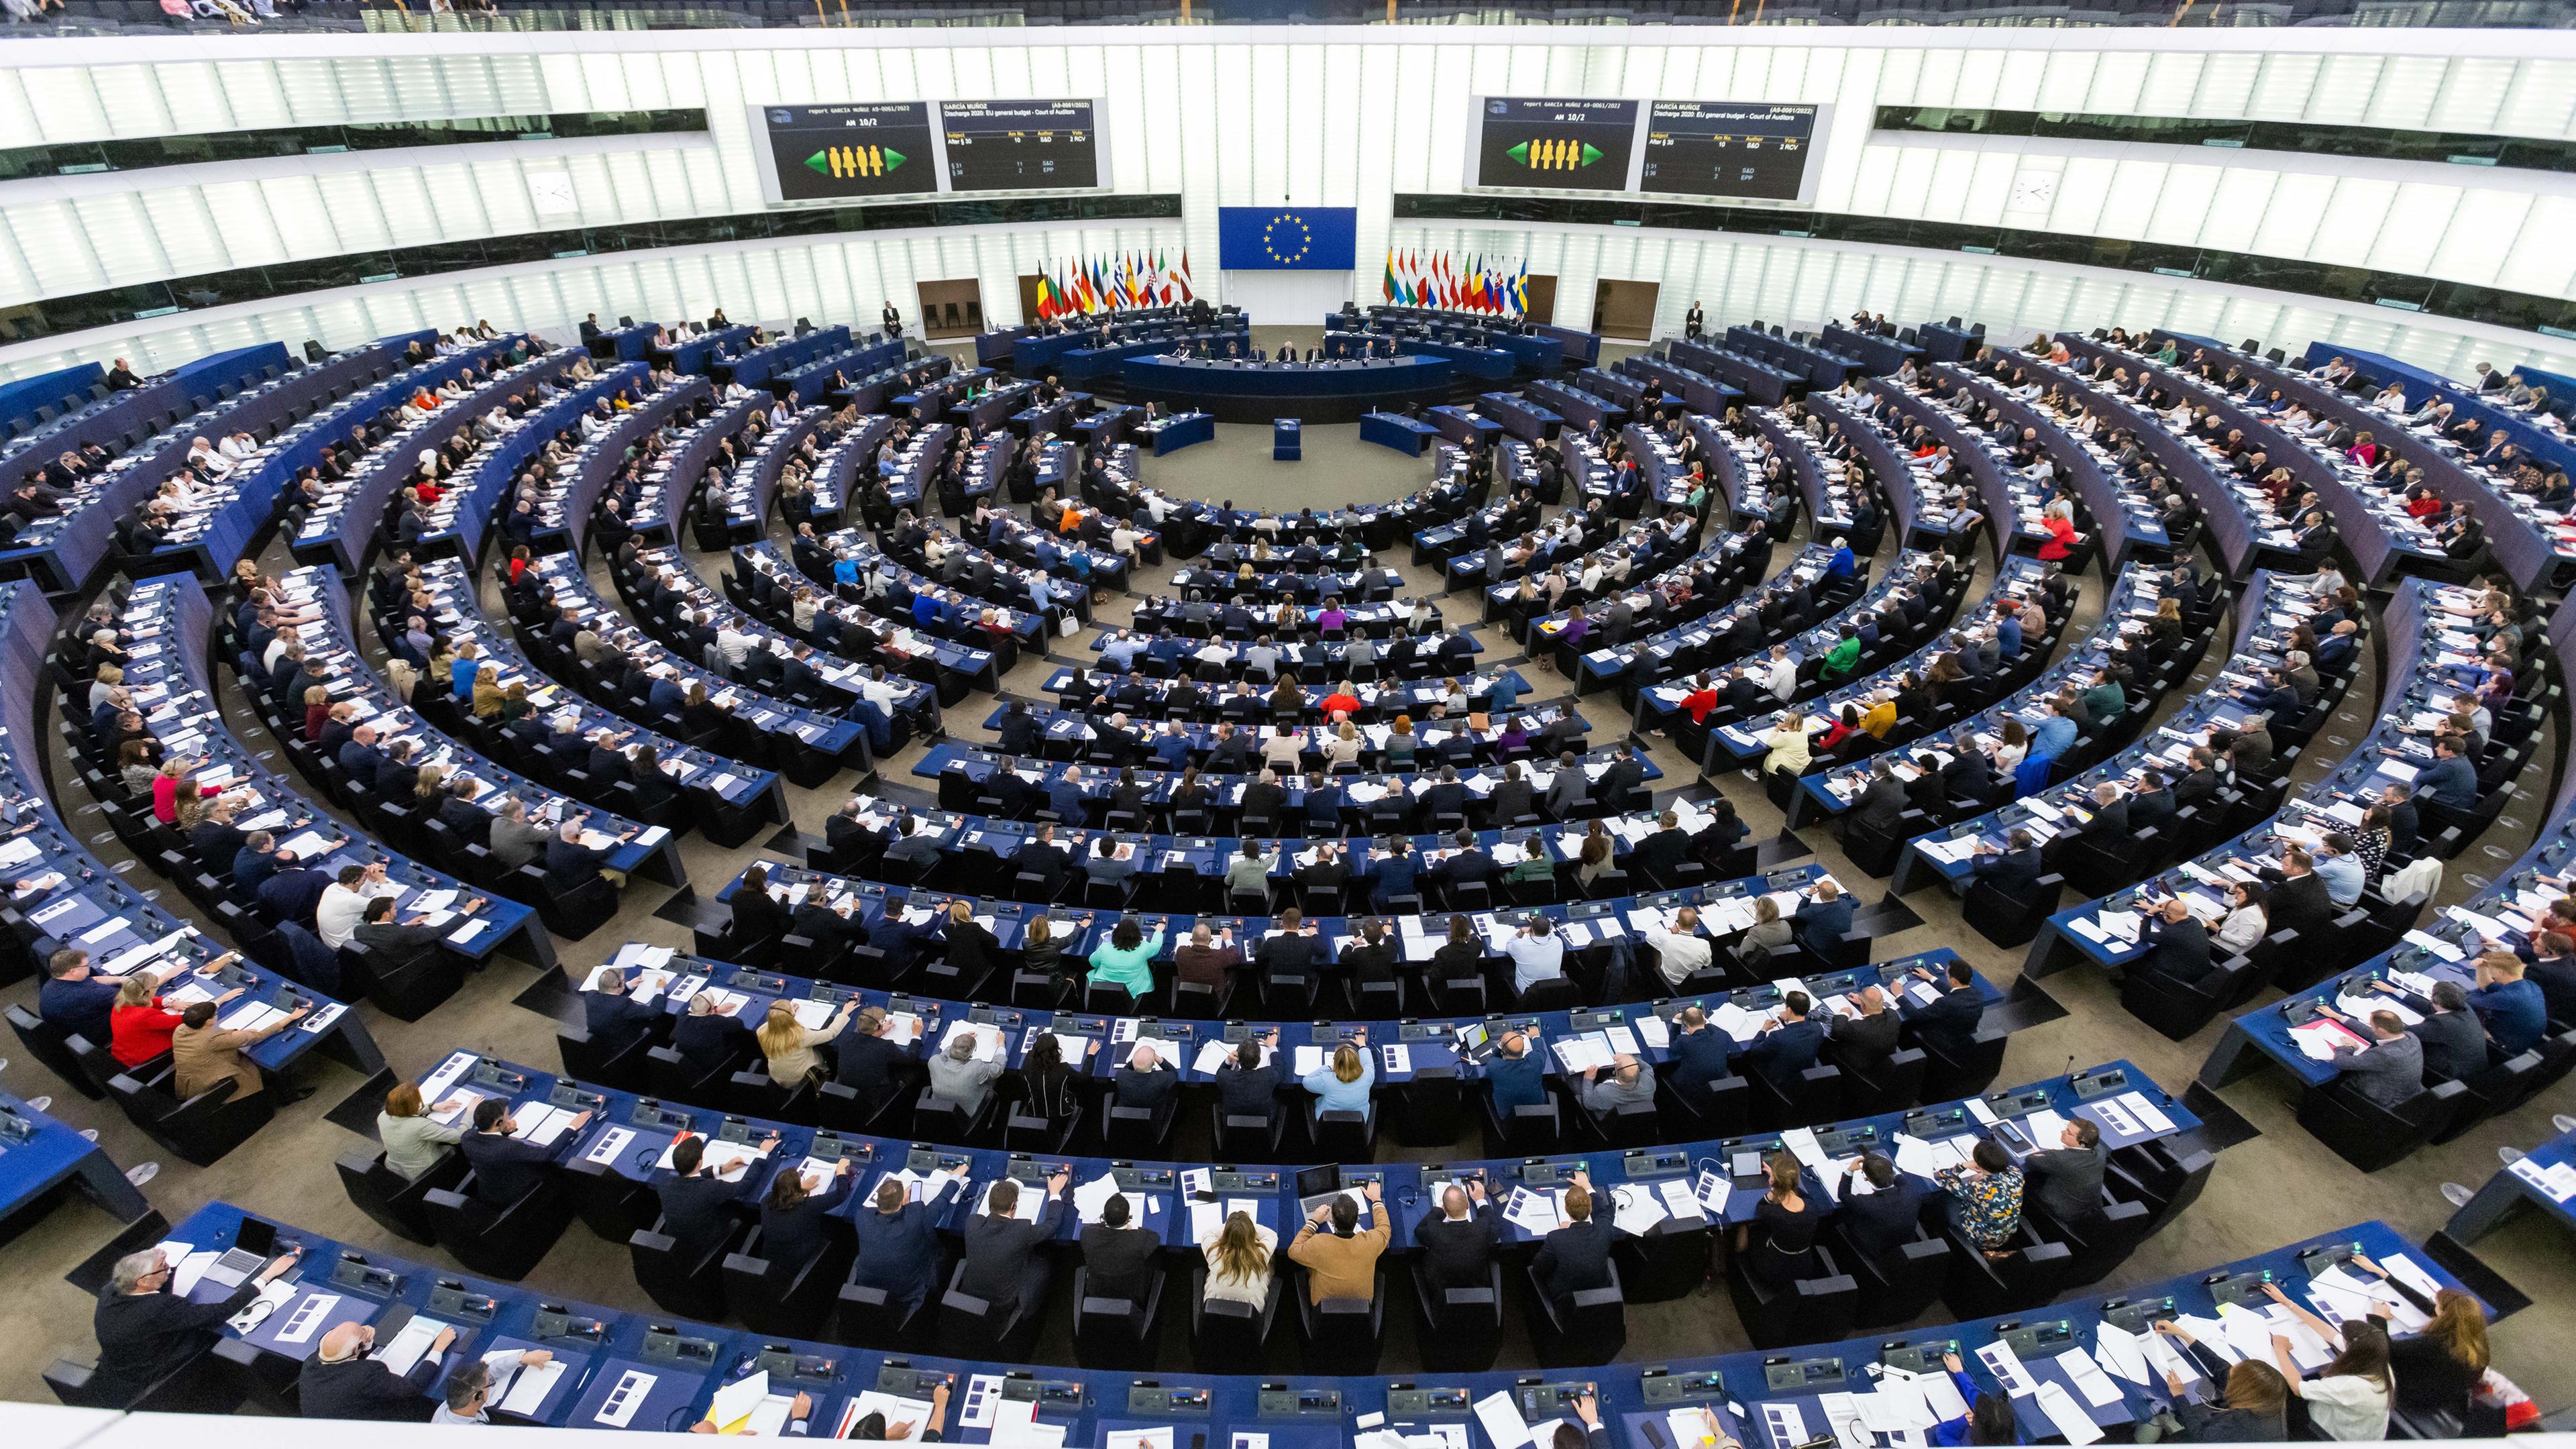 Frankreich, Straßburg: Abgeordnete des Europäischen Parlaments sitzen während einer Abstimmungssitzung im Plenarsaal des Europäischen Parlaments.